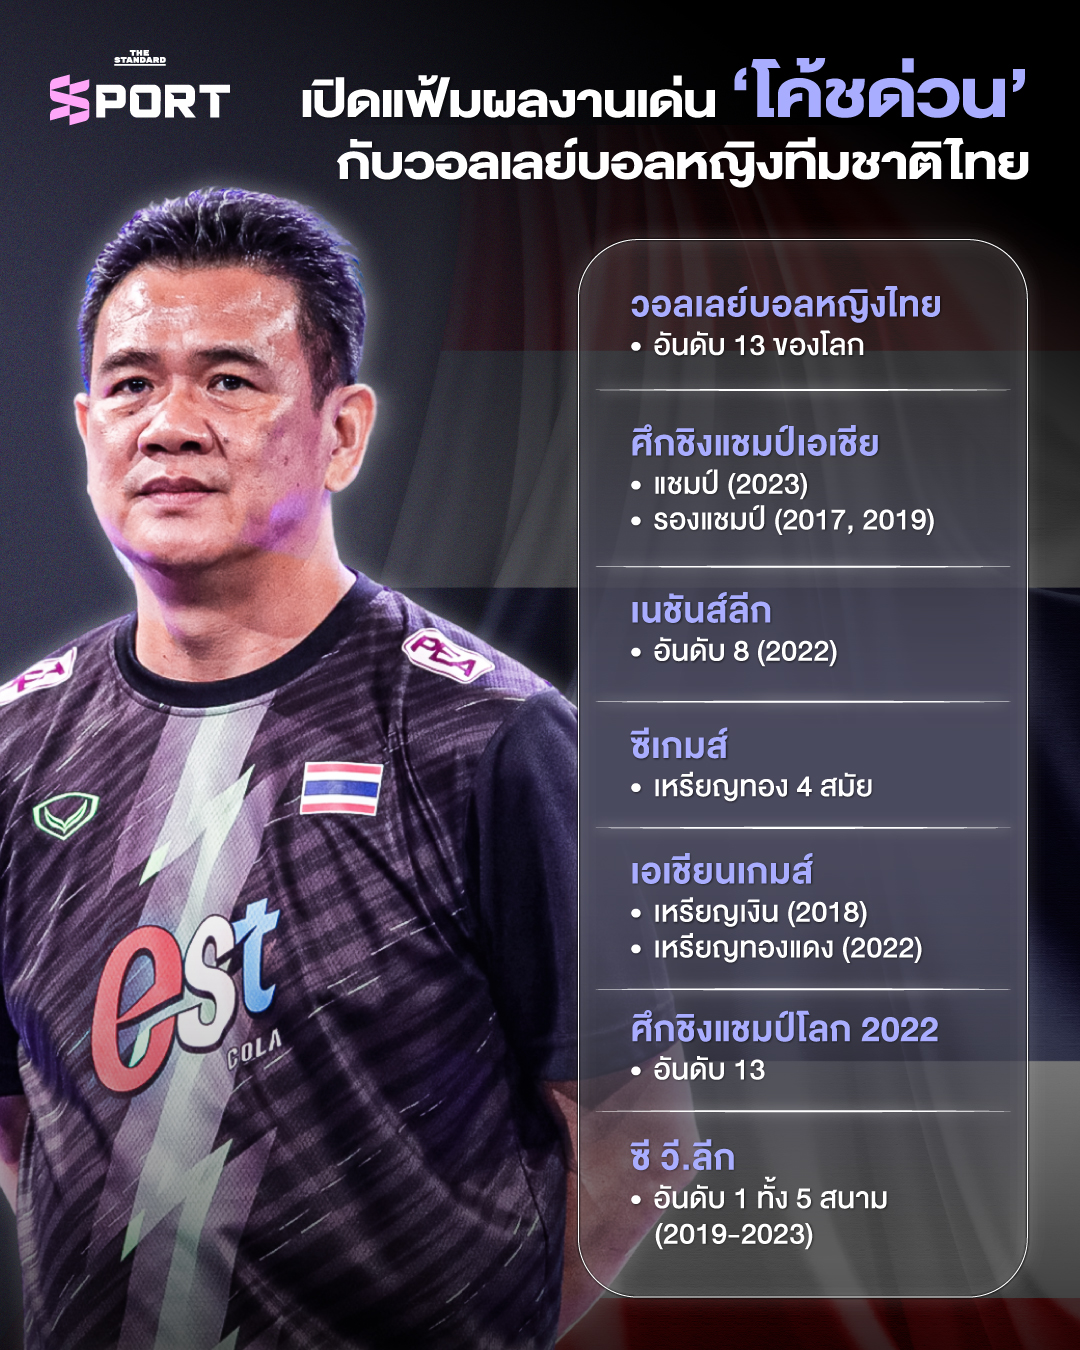 เปิดแฟ้มผลงานเด่น โค้ชด่วน หลัง ลาออก วอลเลย์บอลหญิงทีมชาติไทย